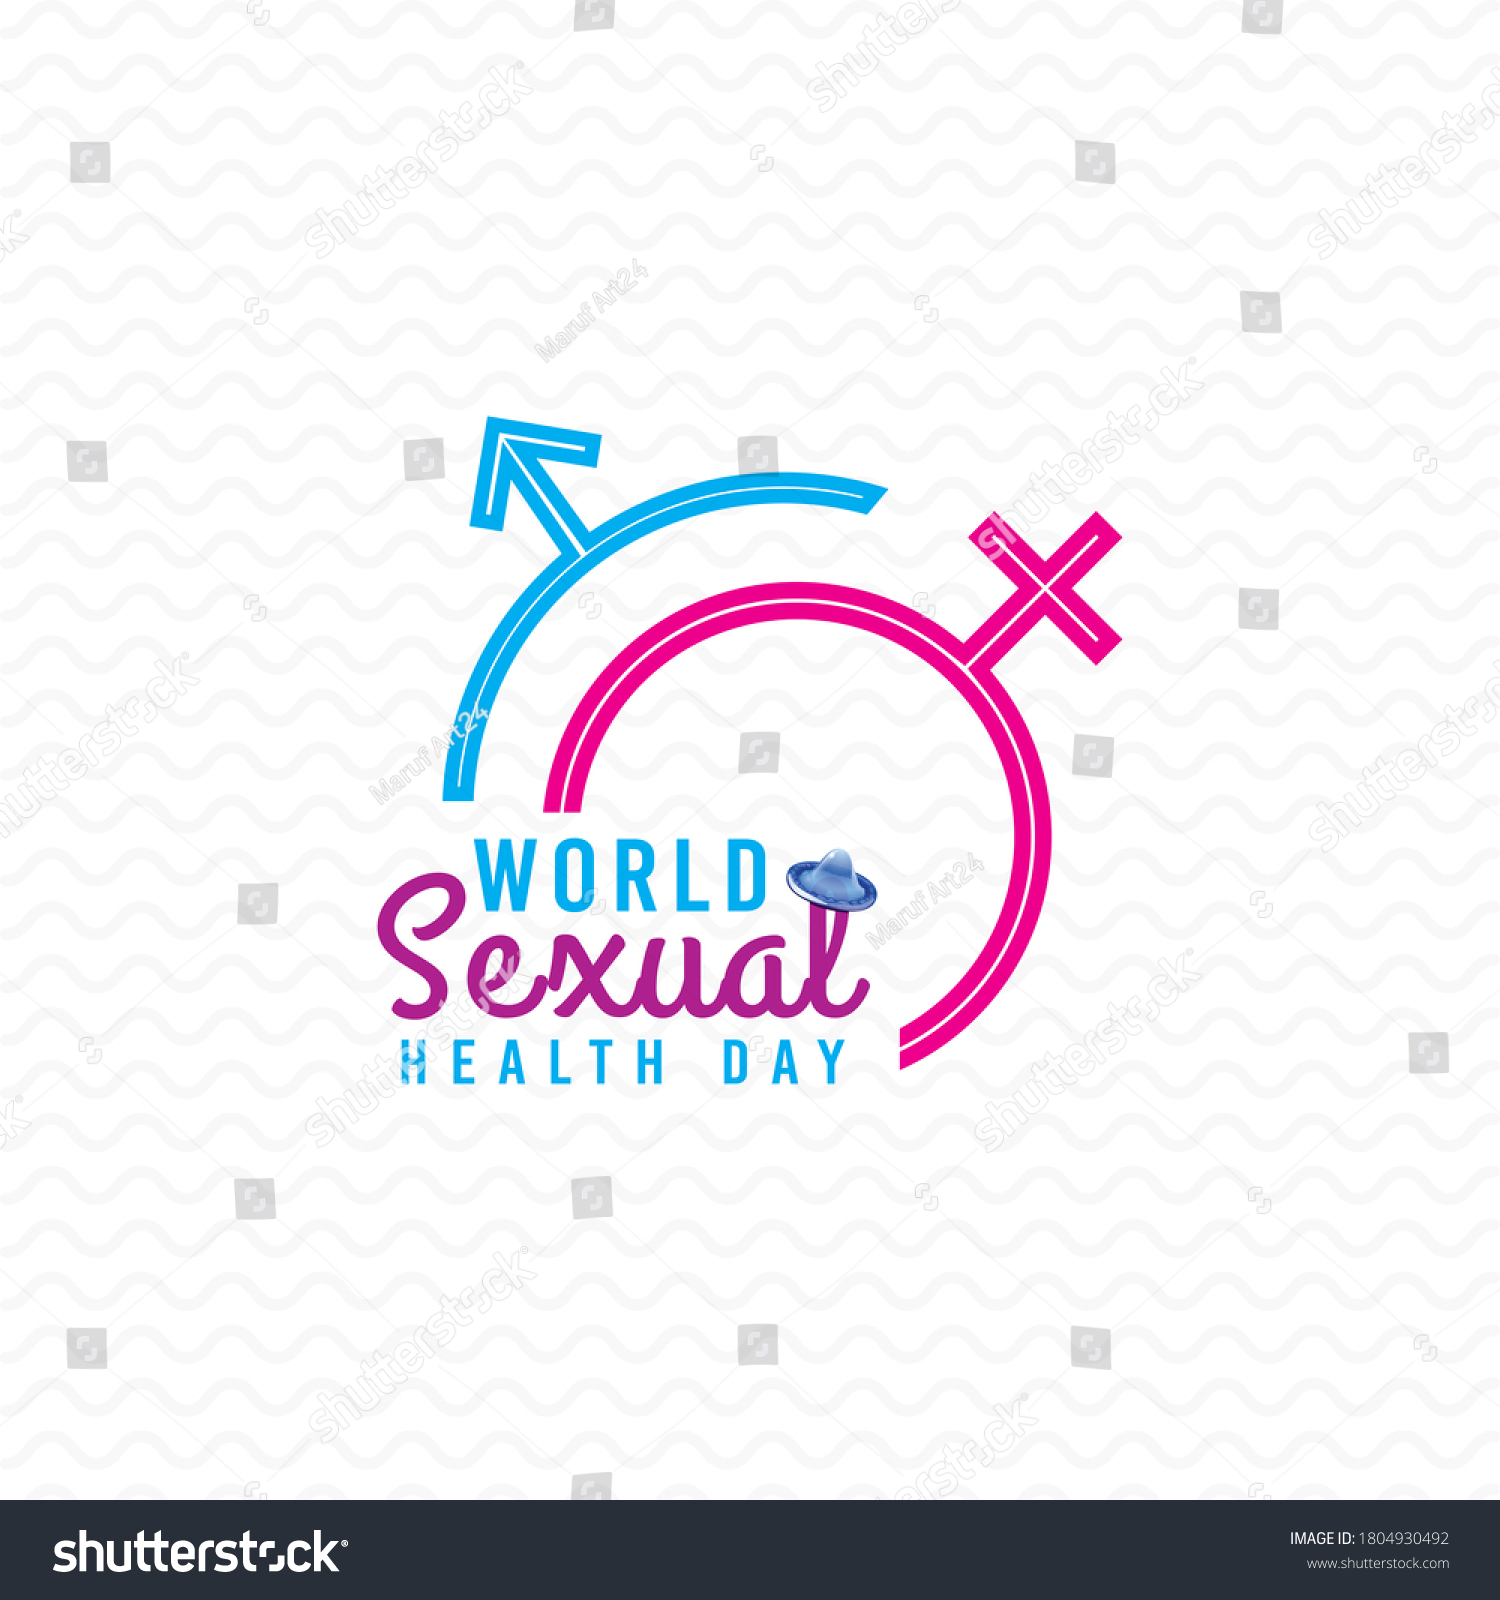 3136 Imágenes De Sexual Health Logo Imágenes Fotos Y Vectores De Stock Shutterstock 0554